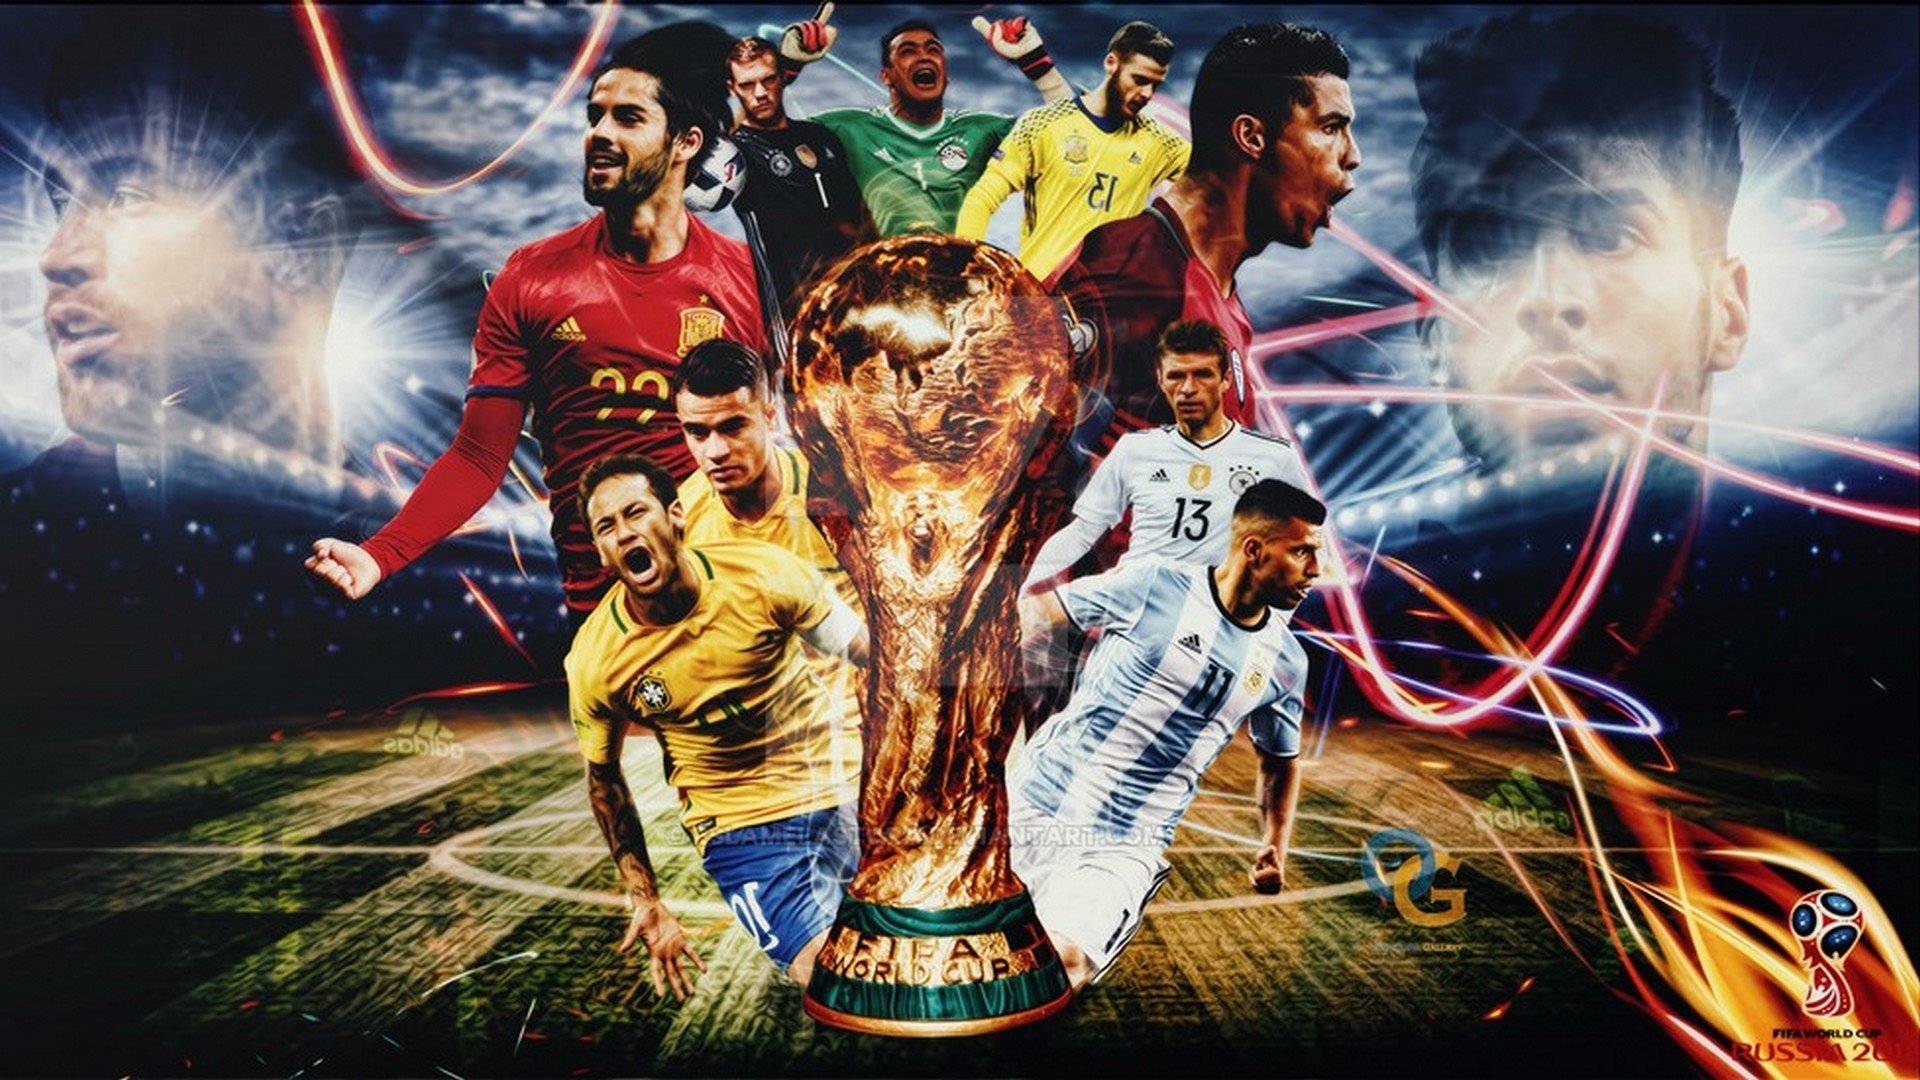 Обои на телефон команда. FIFA World Cup 2022. Футбольные обои. Футбольные постеры. Картинки на рабочий стол футбол.